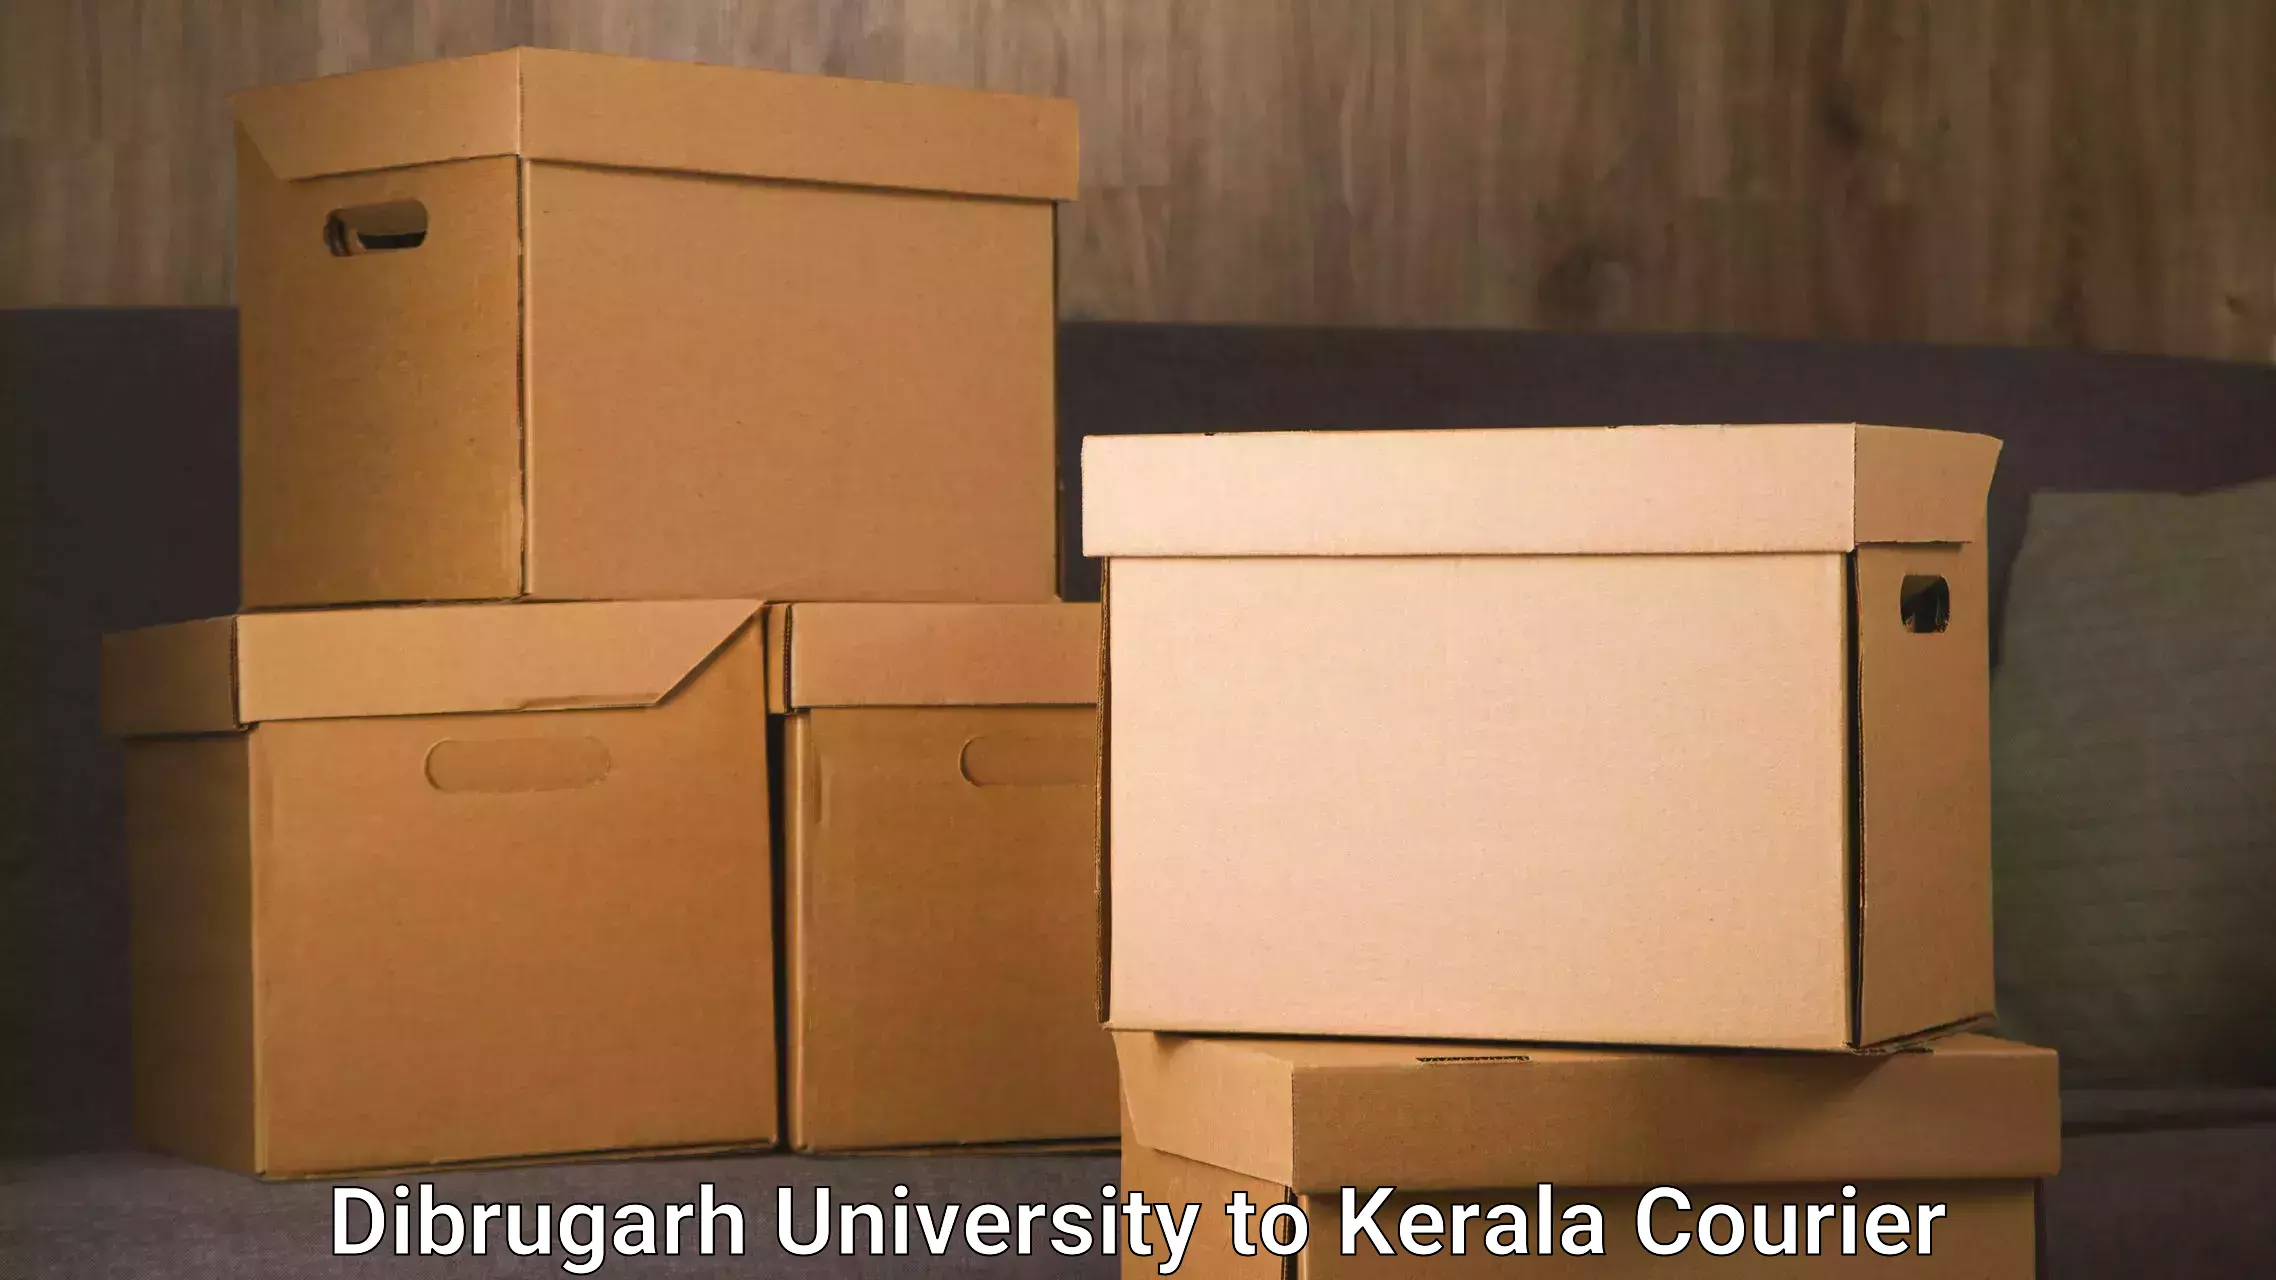 Logistics service provider in Dibrugarh University to Kerala